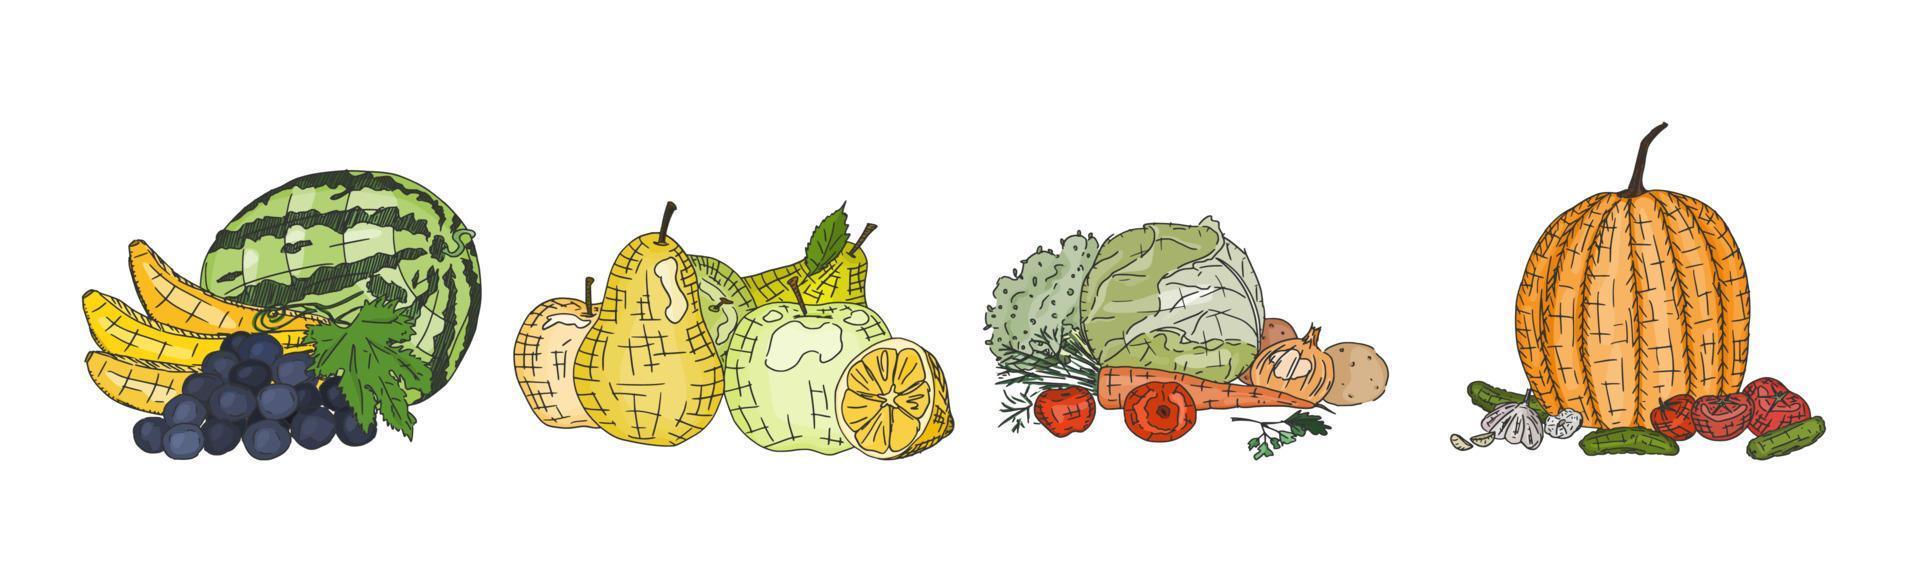 légumes et fruits délicieux naturel végétarien vecteur